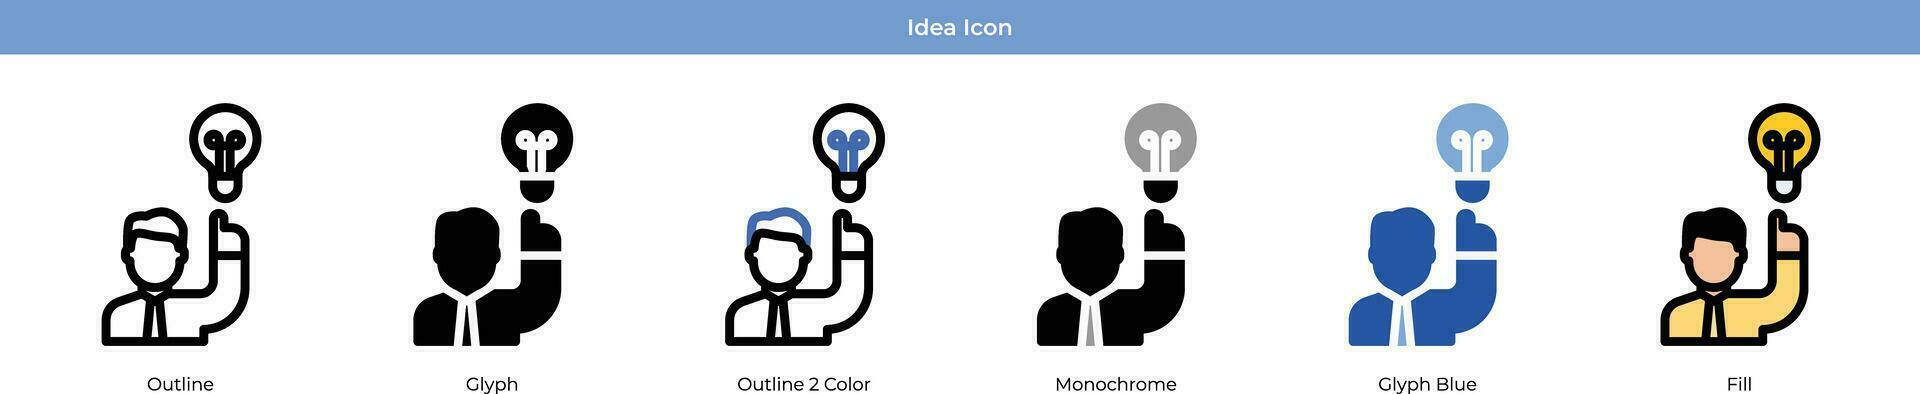 conjunto de iconos de ideas vector